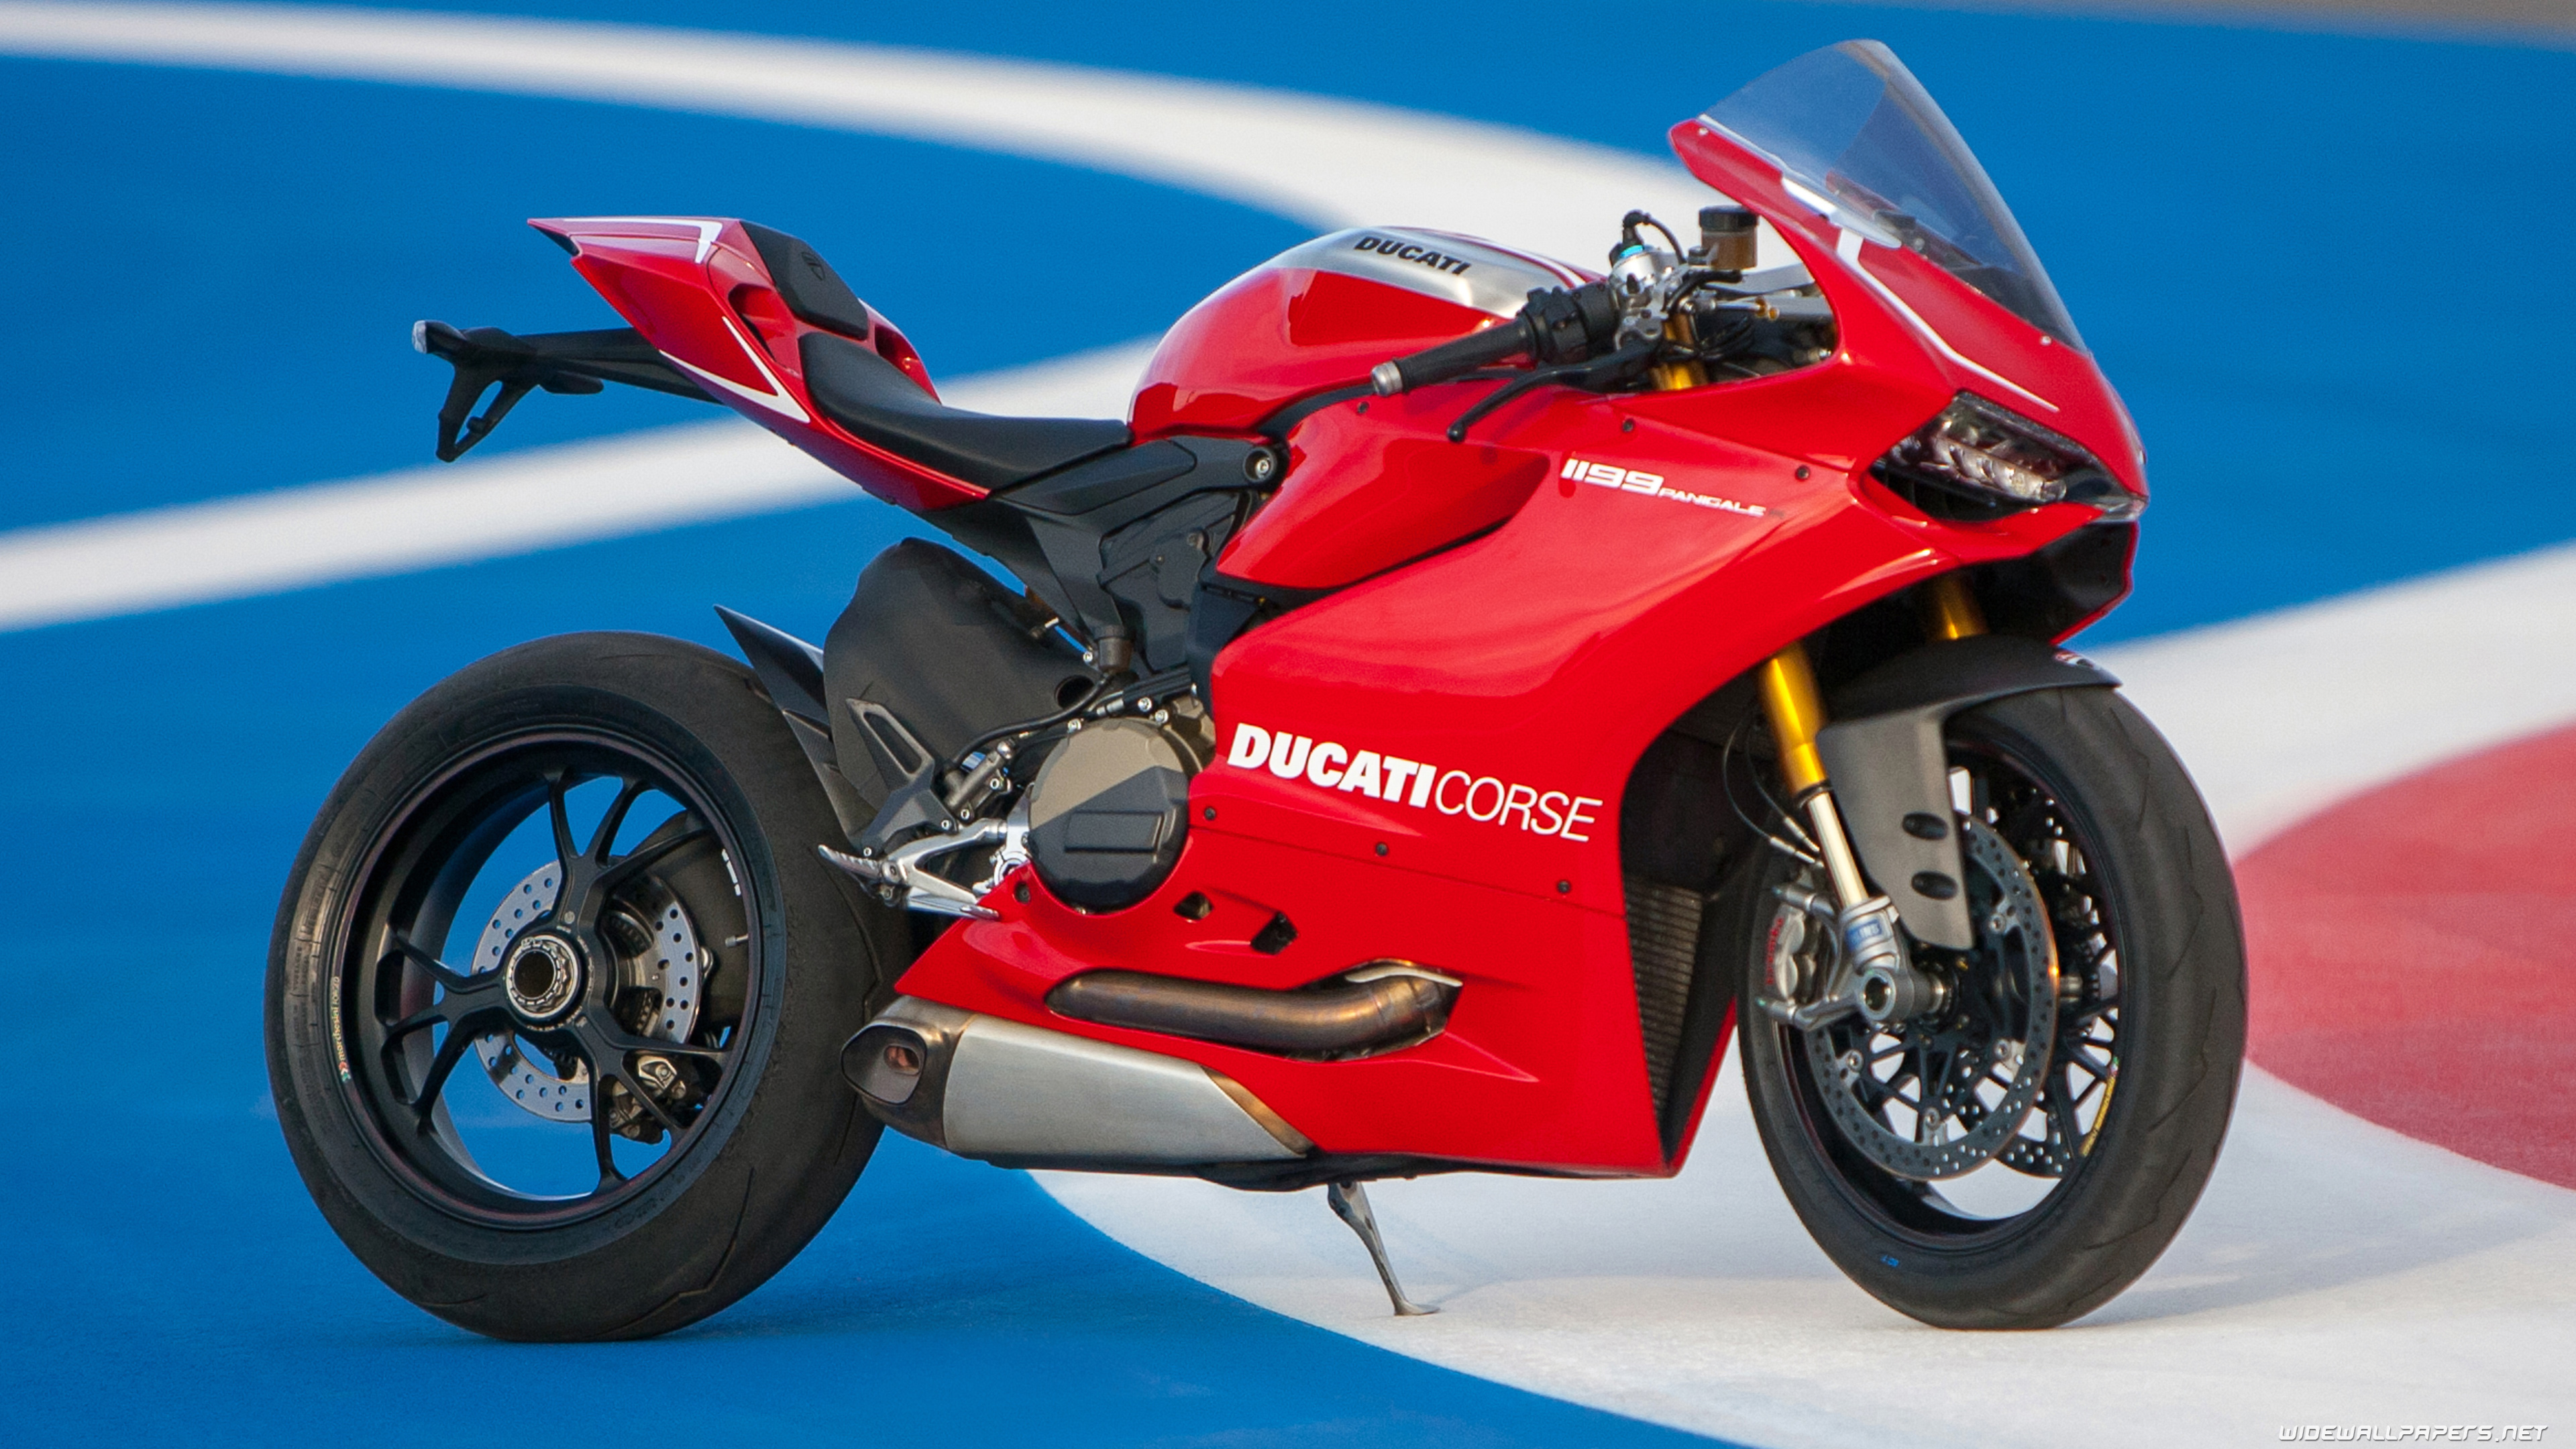 83+] Ducati Panigale Wallpapers - WallpaperSafari